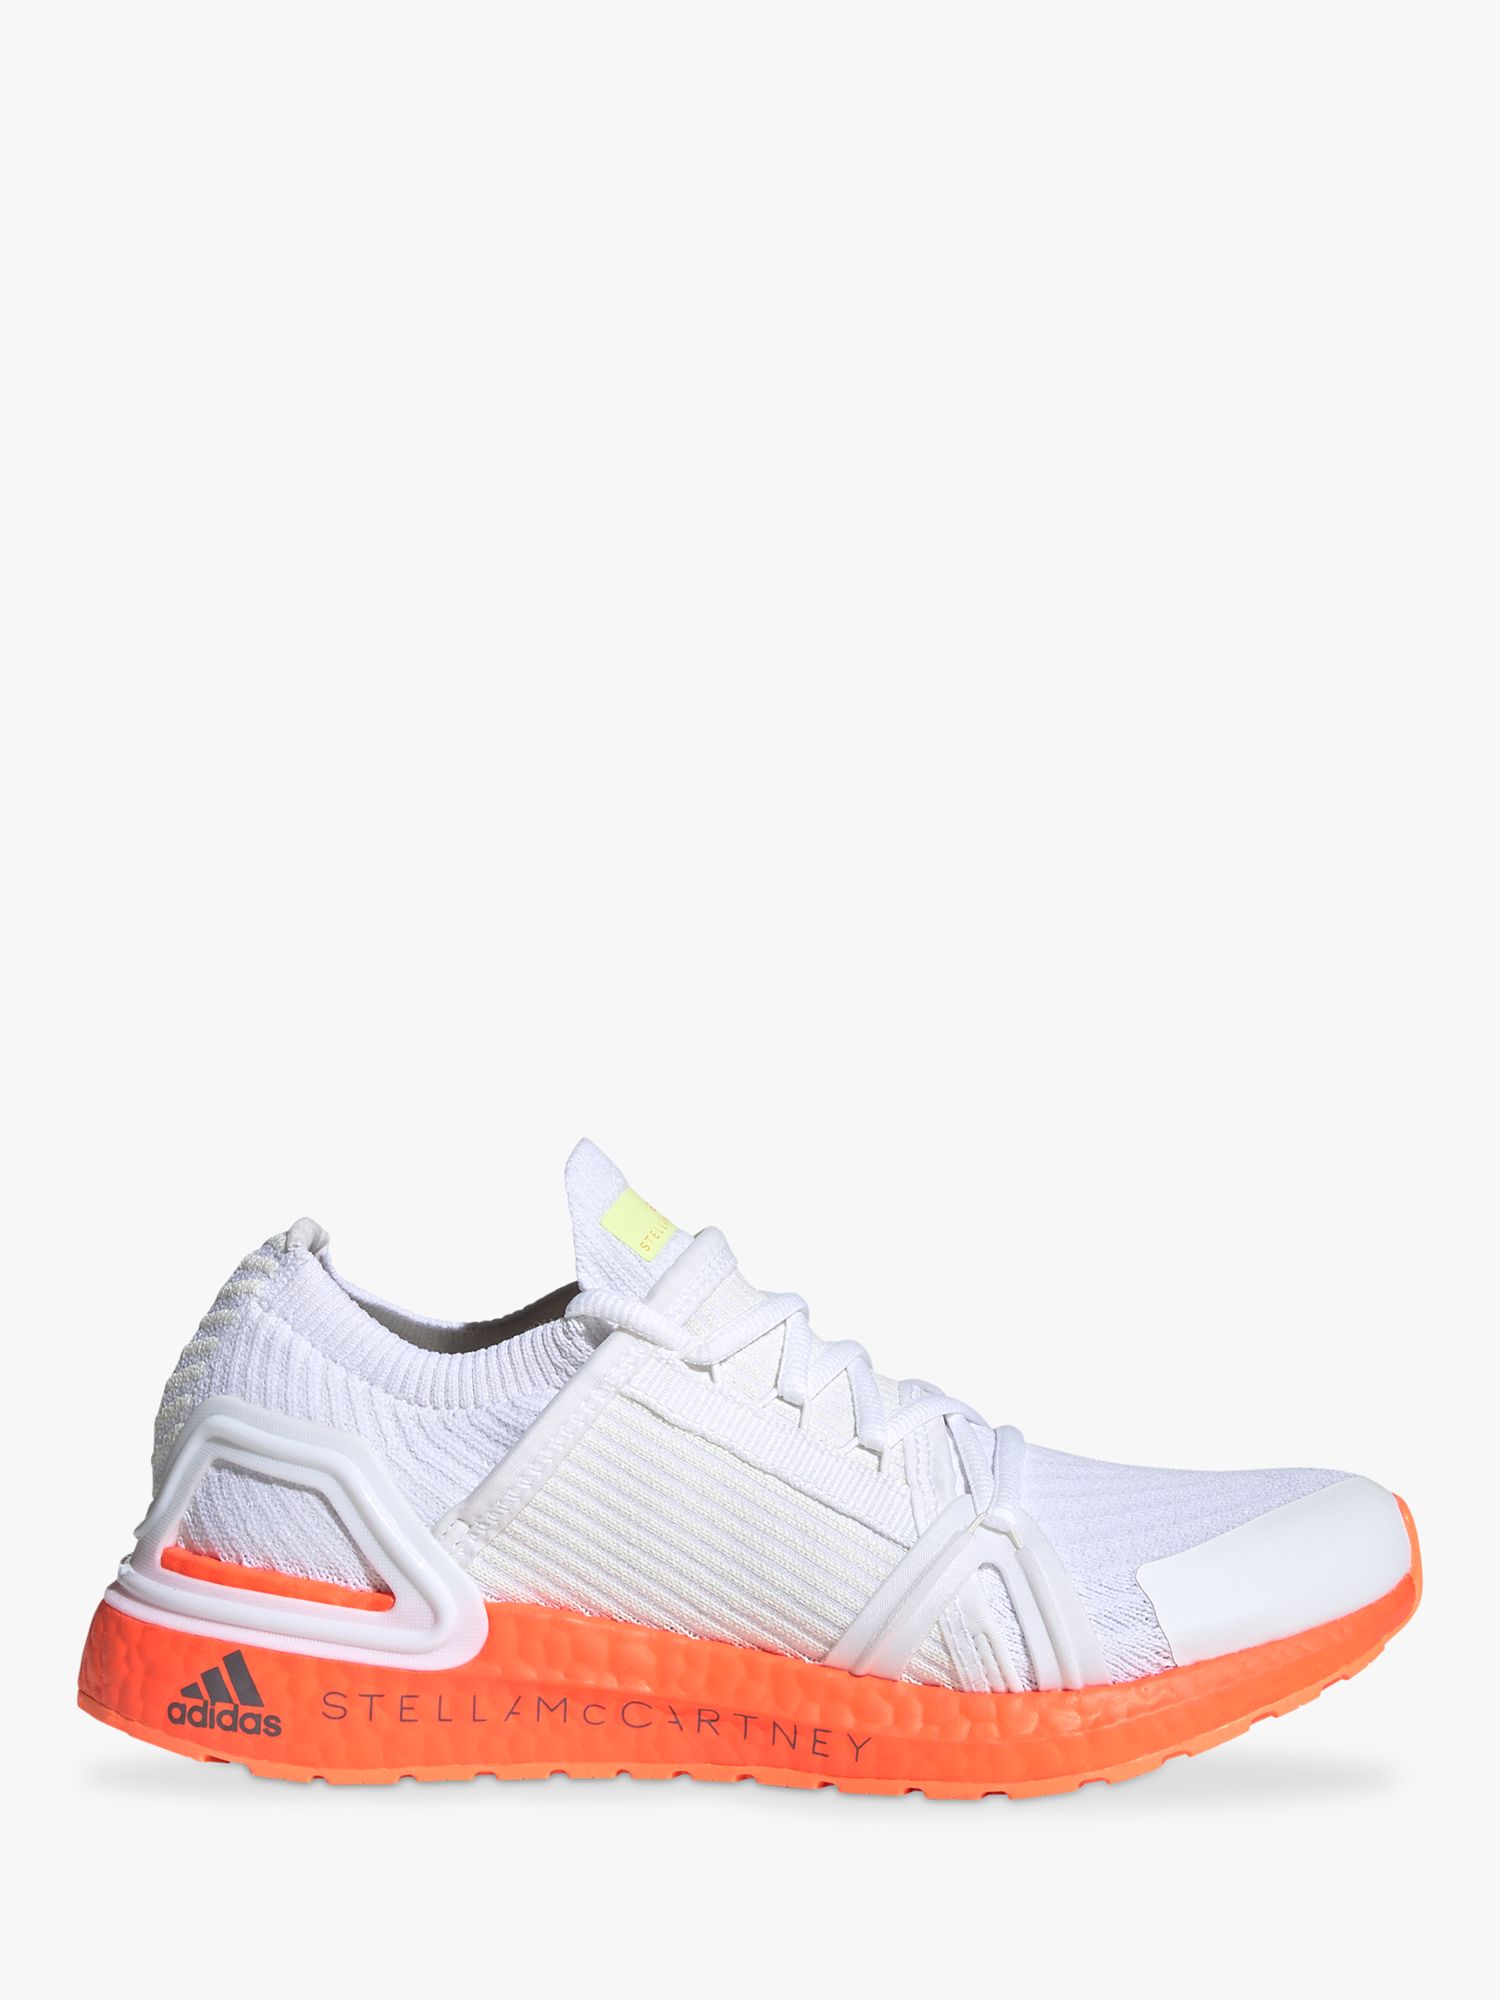 adidas shoes white and orange